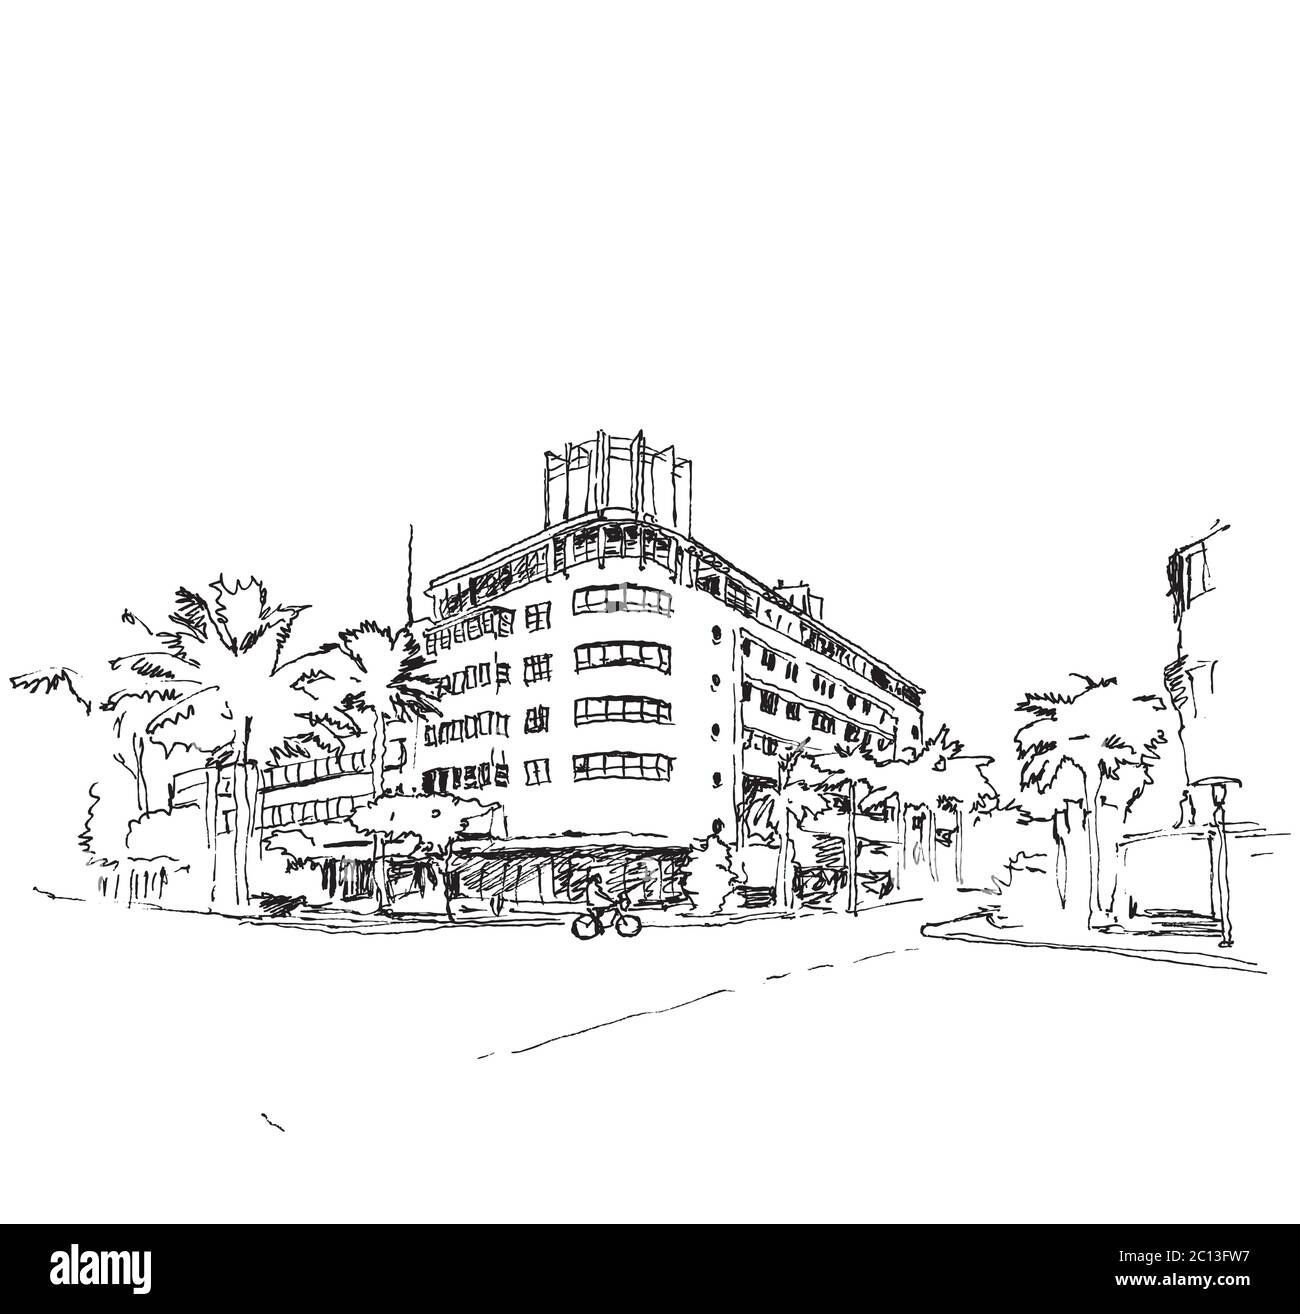 Dessin d'une illustration d'un coin dans Ocean Drive à Miami, Floride, États-Unis Illustration de Vecteur